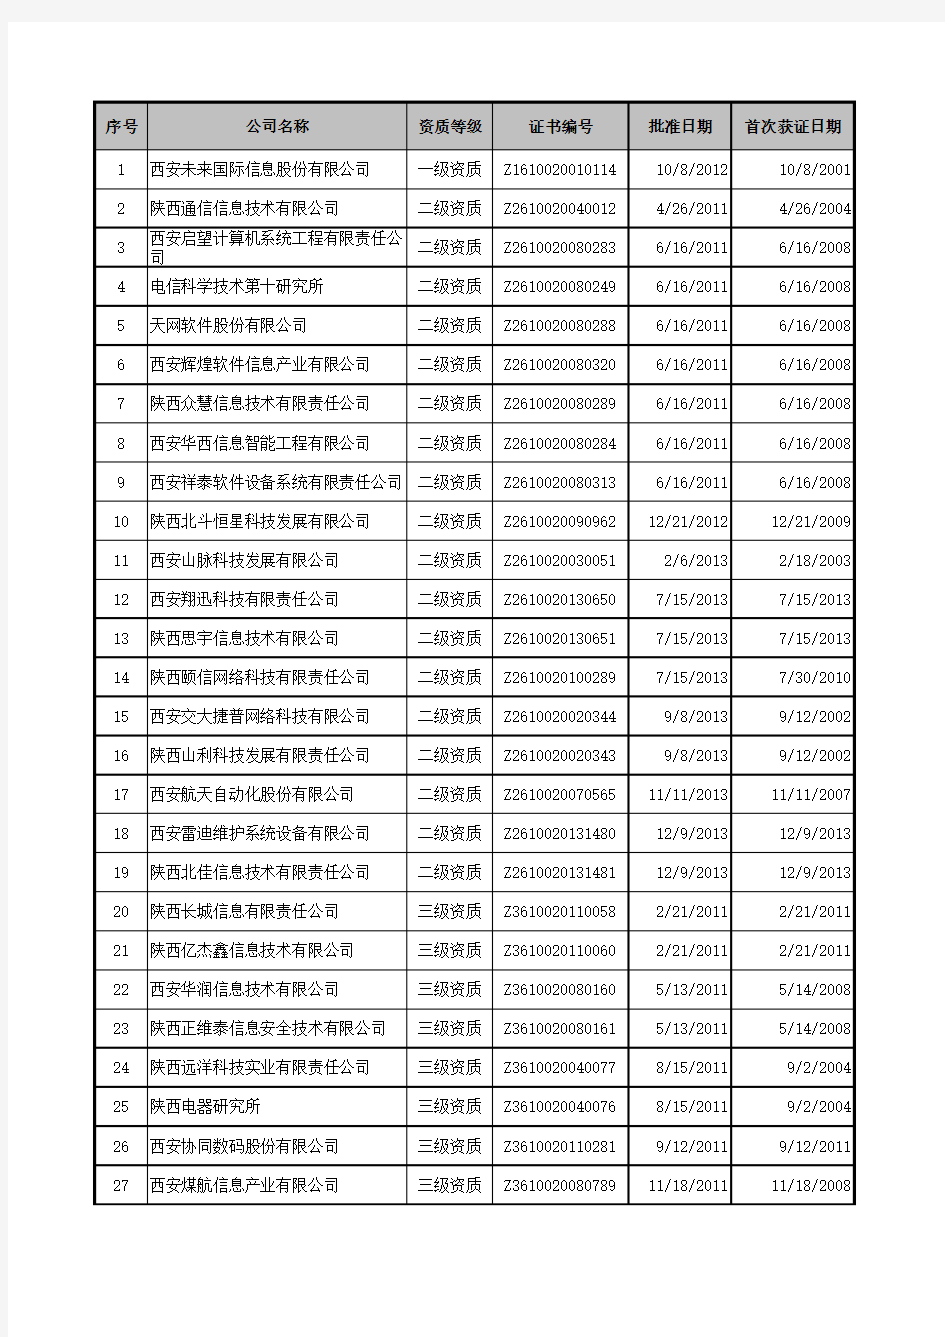 2015陕西(西安)系统集成商名单大全